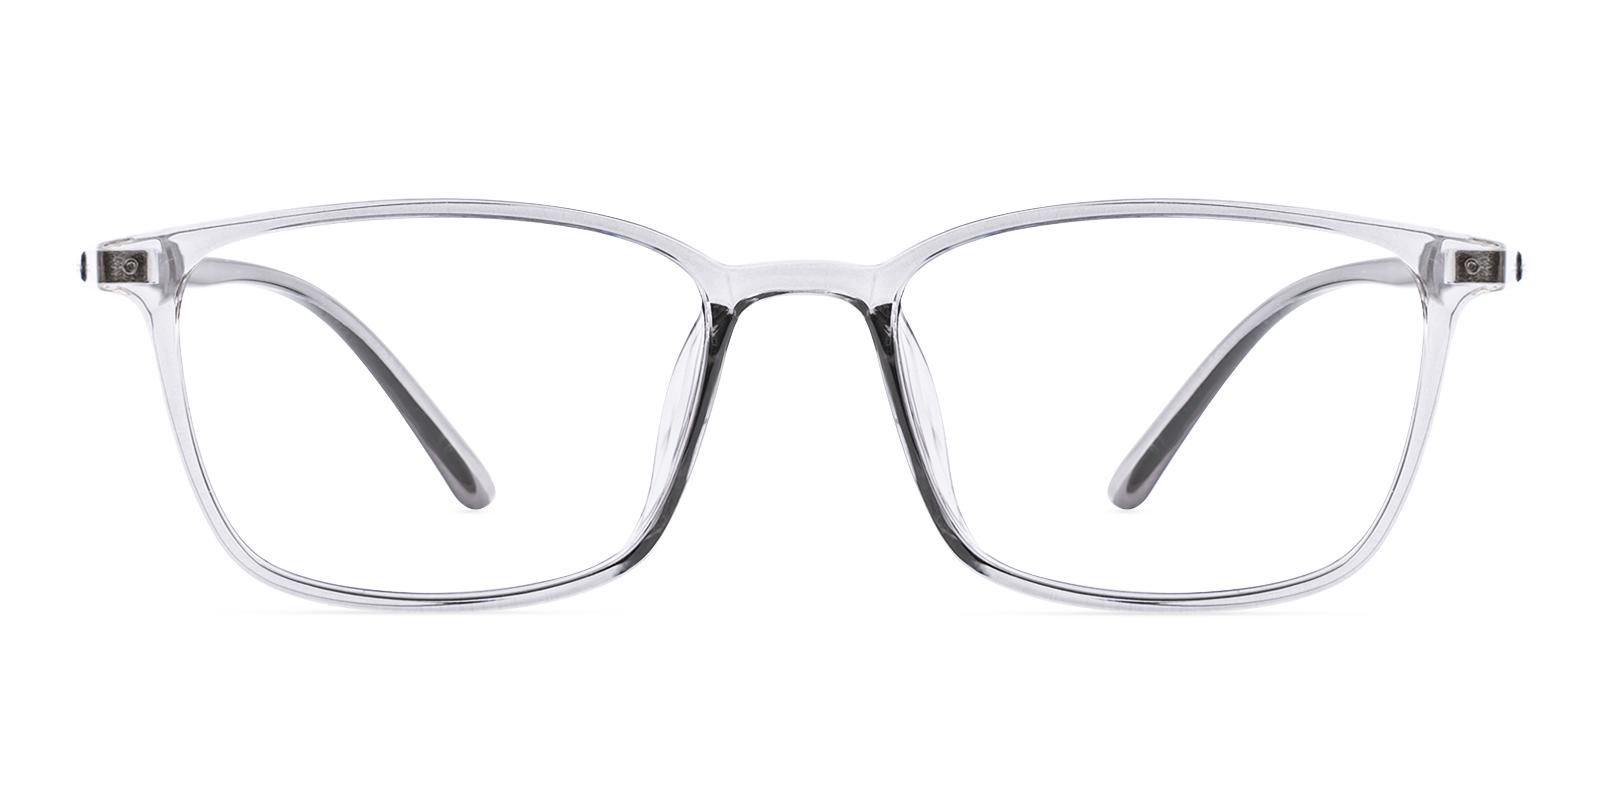 Polit Gray TR Eyeglasses , UniversalBridgeFit Frames from ABBE Glasses